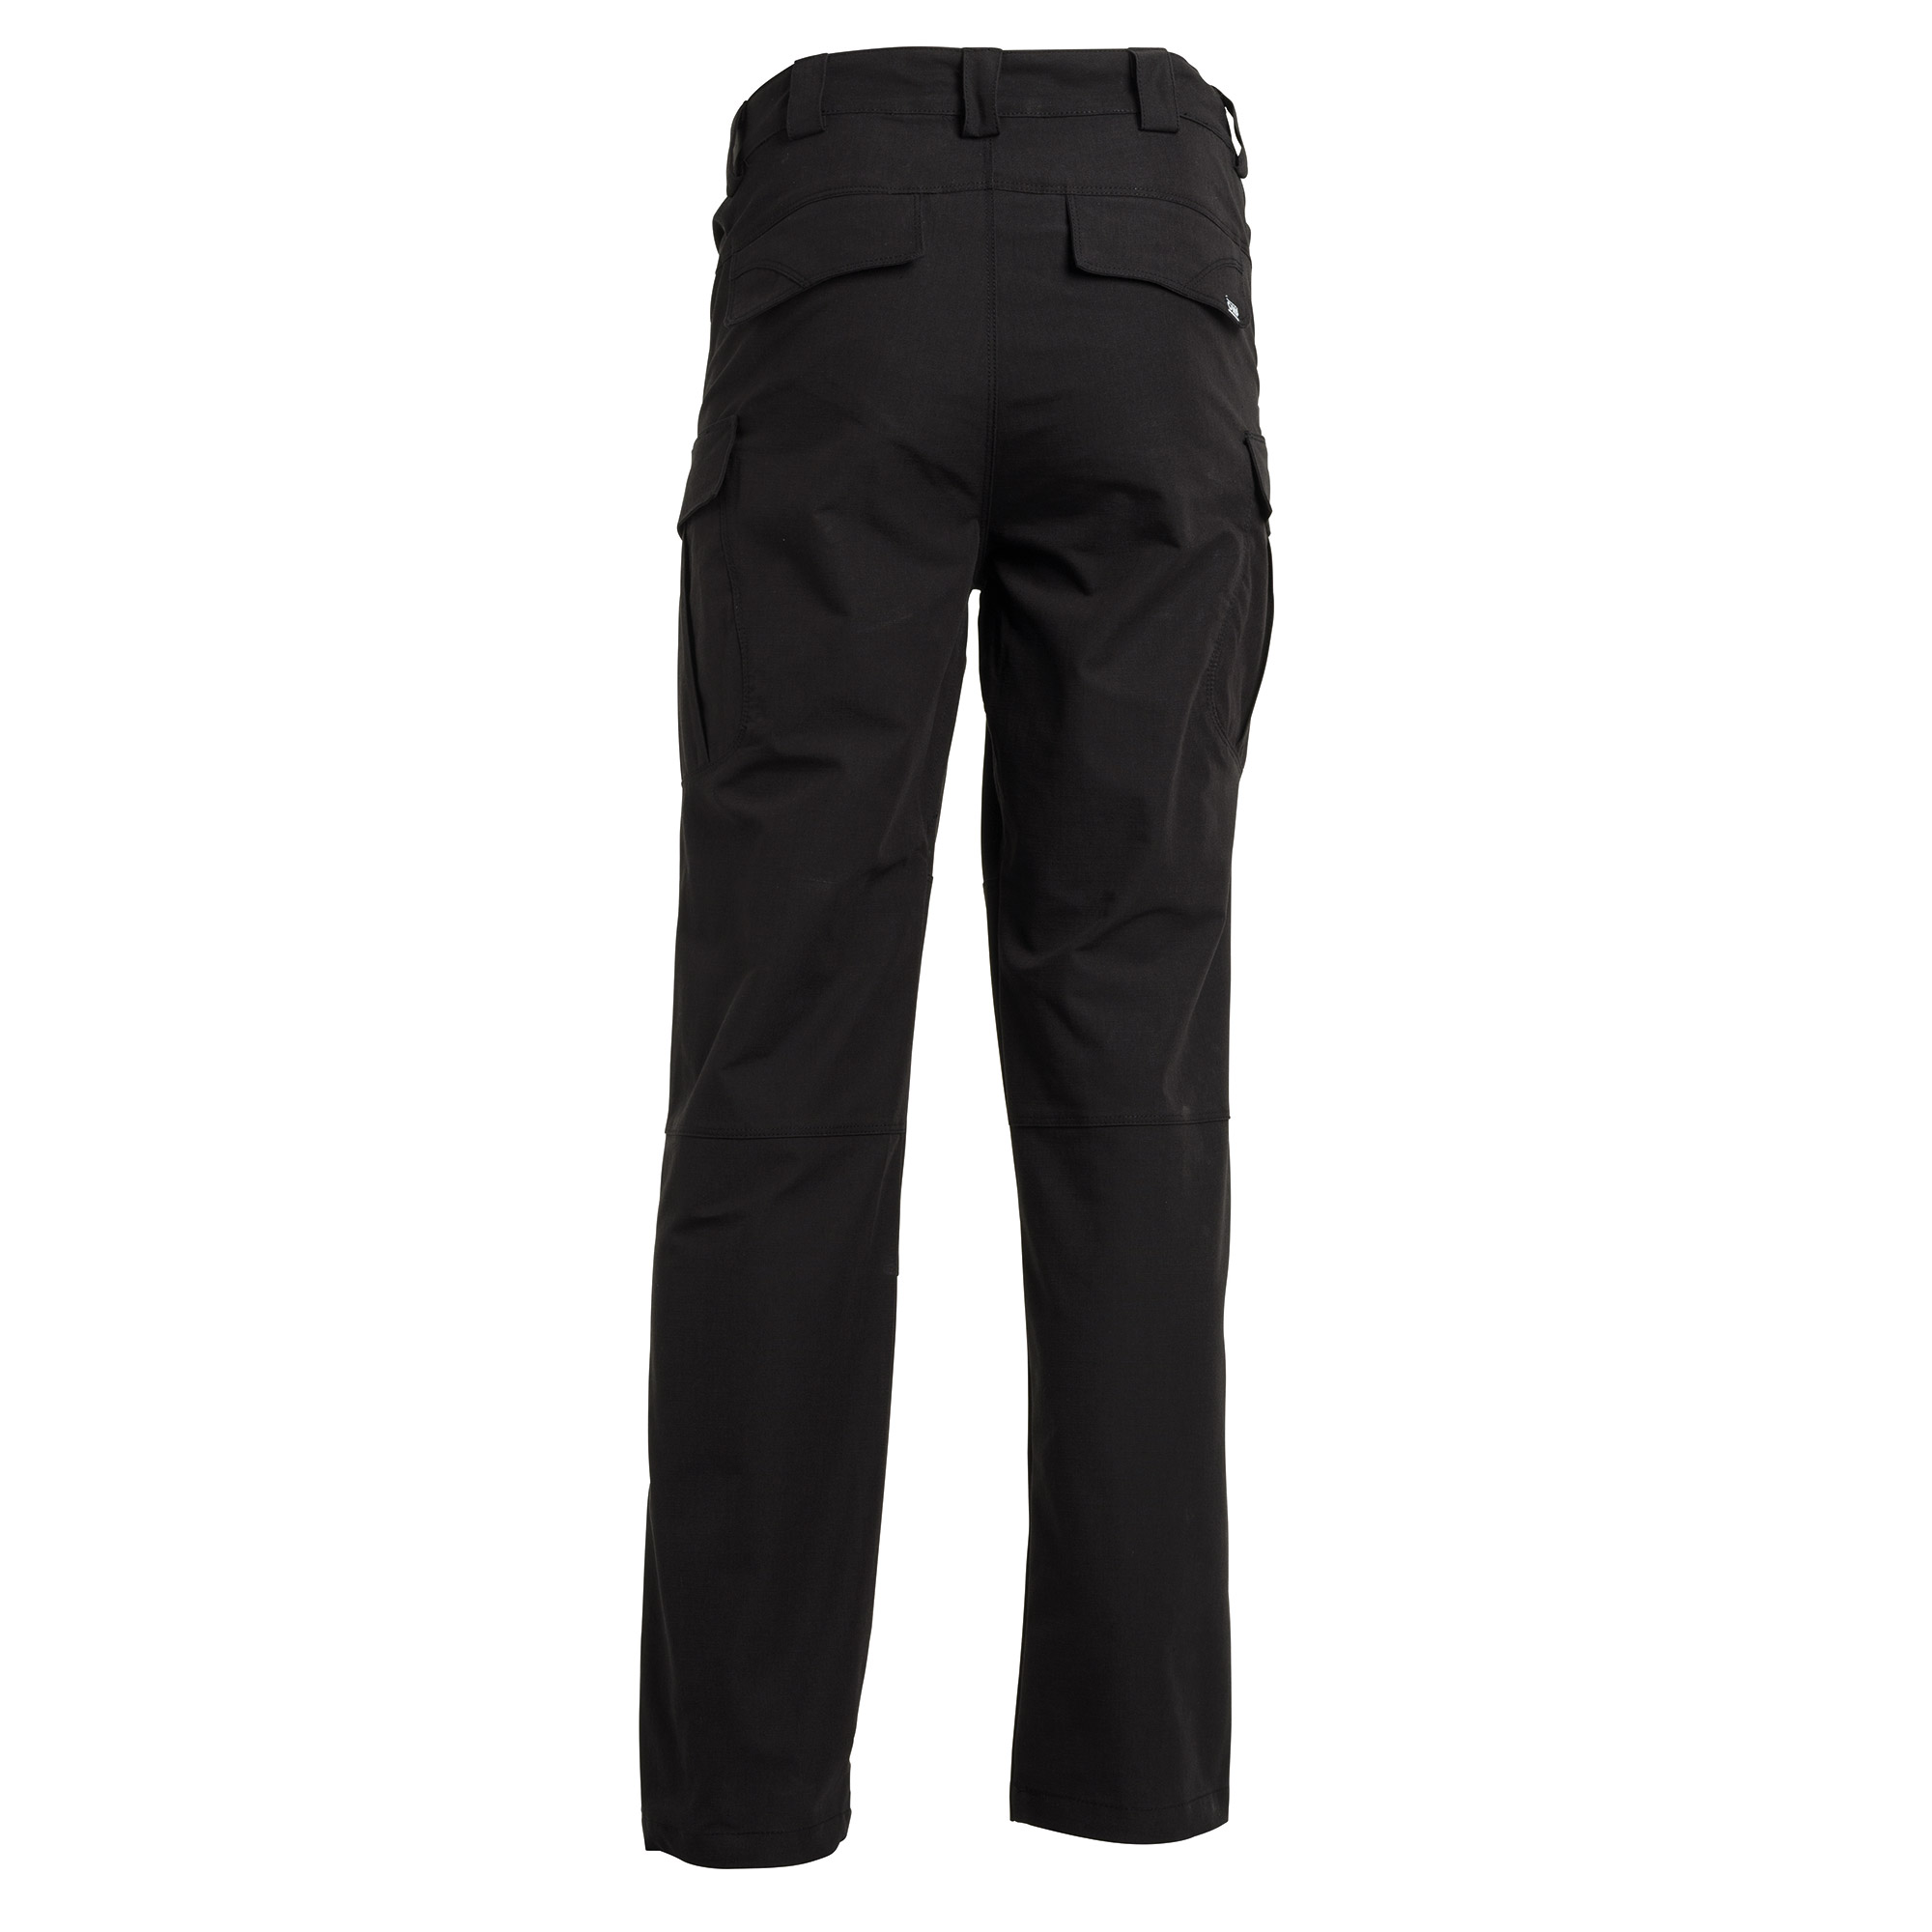 TuffStuff Pro Worker Work Trousers Holster Pockets Hard Wearing Trouser 711  | eBay